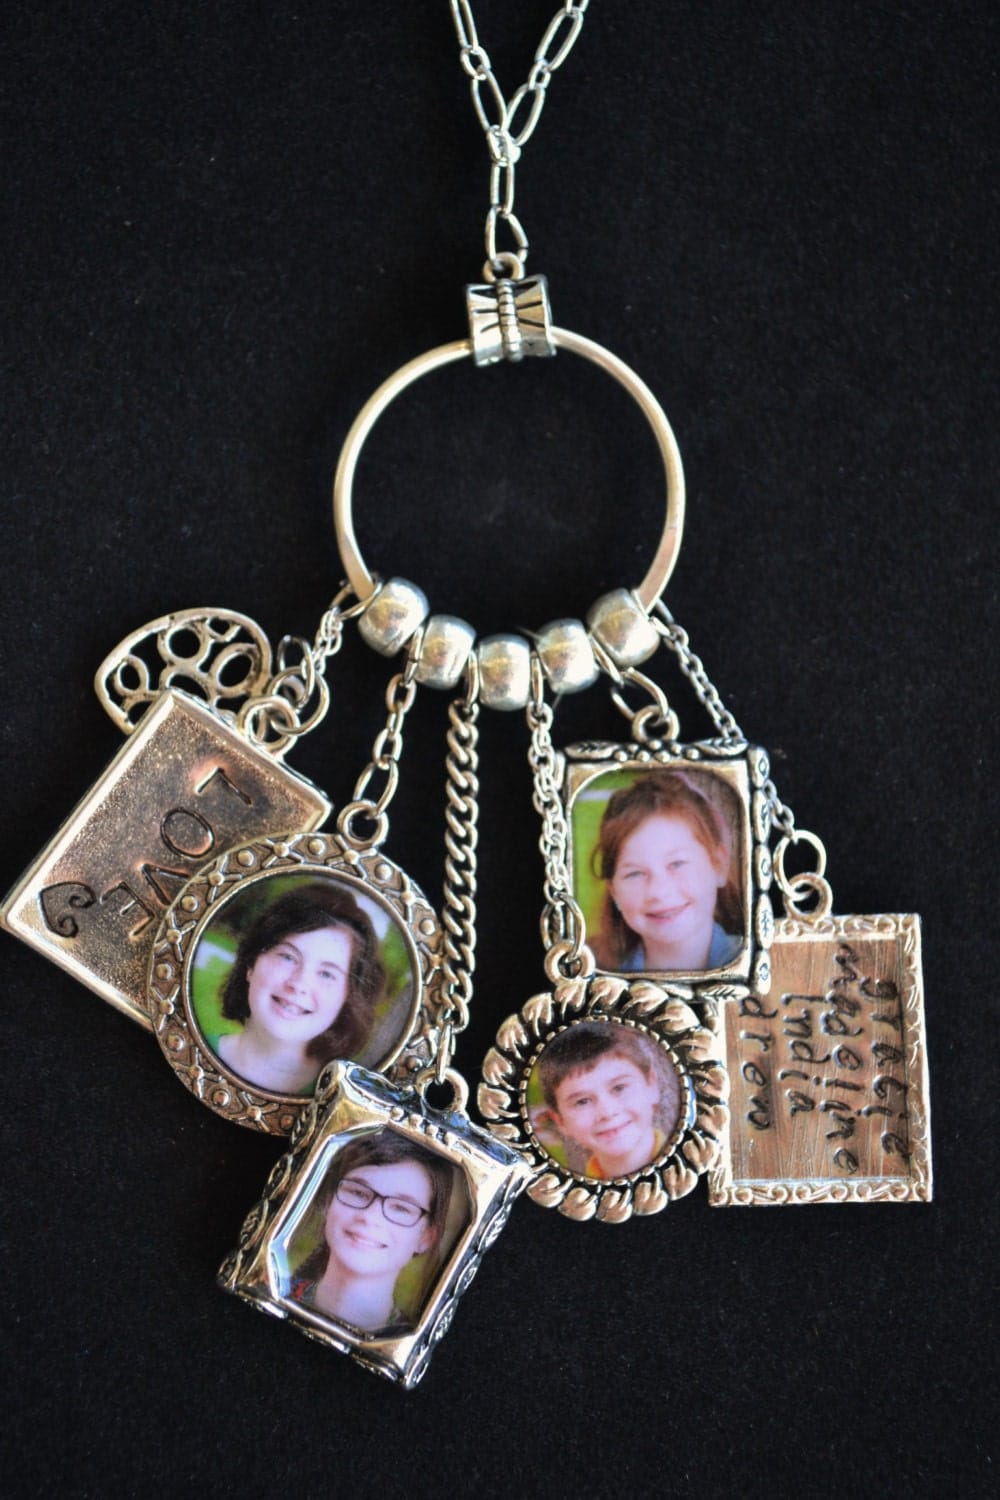 Personalized Photo Jewelry Custom Photo Charm Necklace